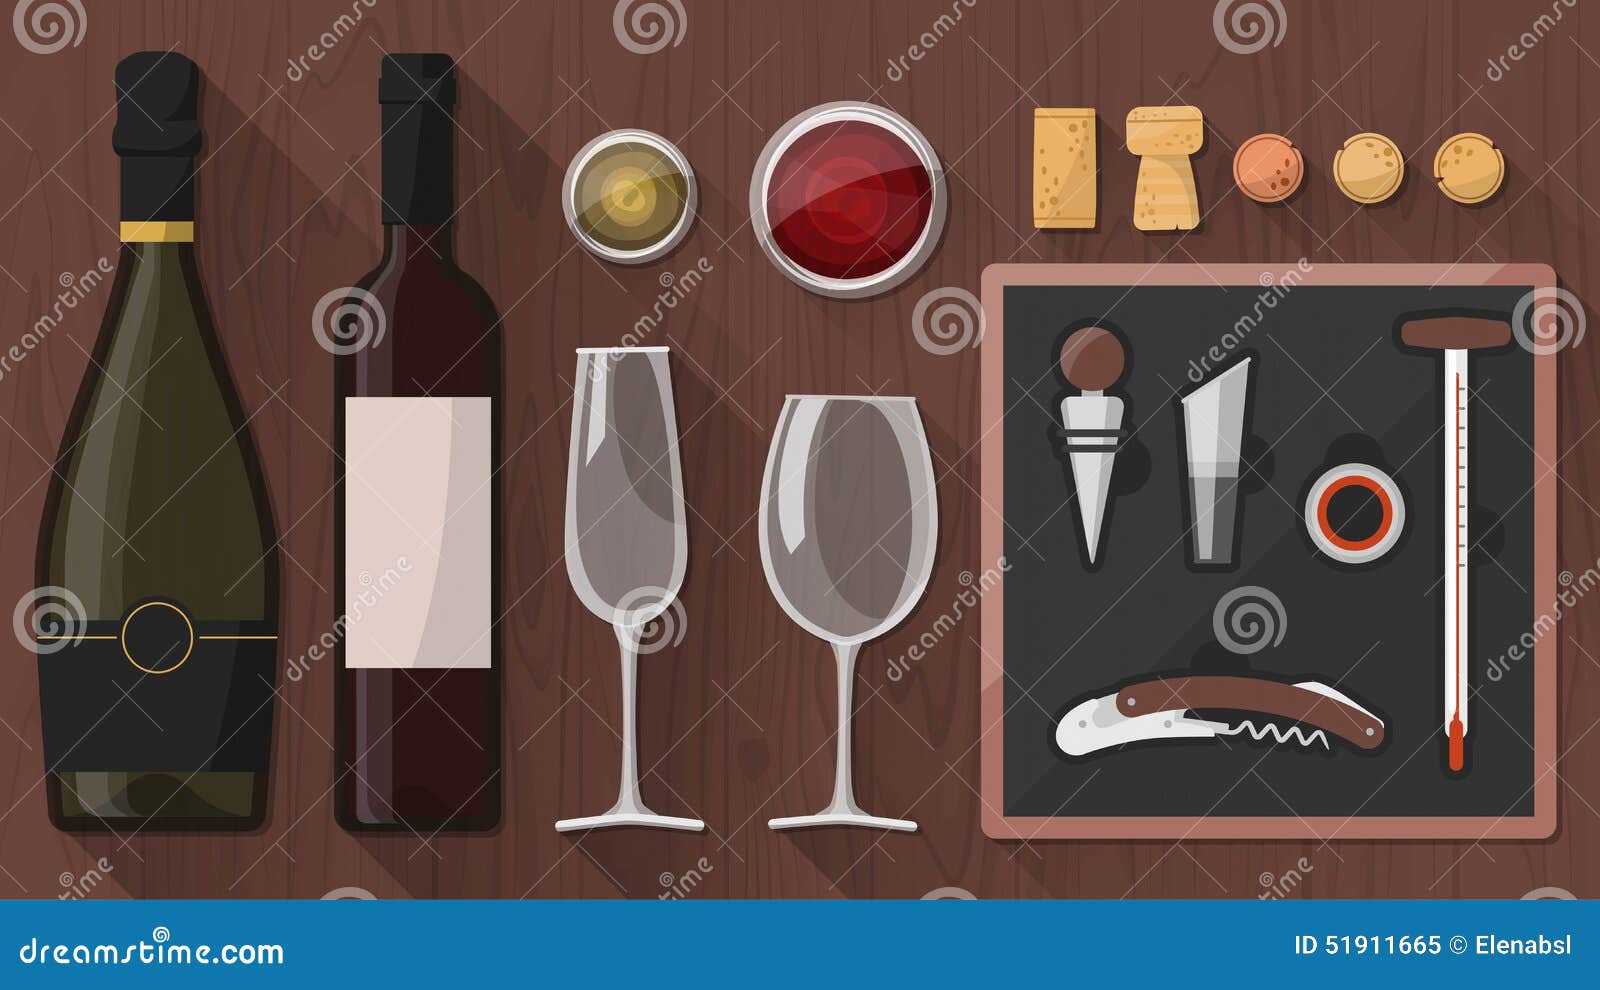 wine tasting toolkit